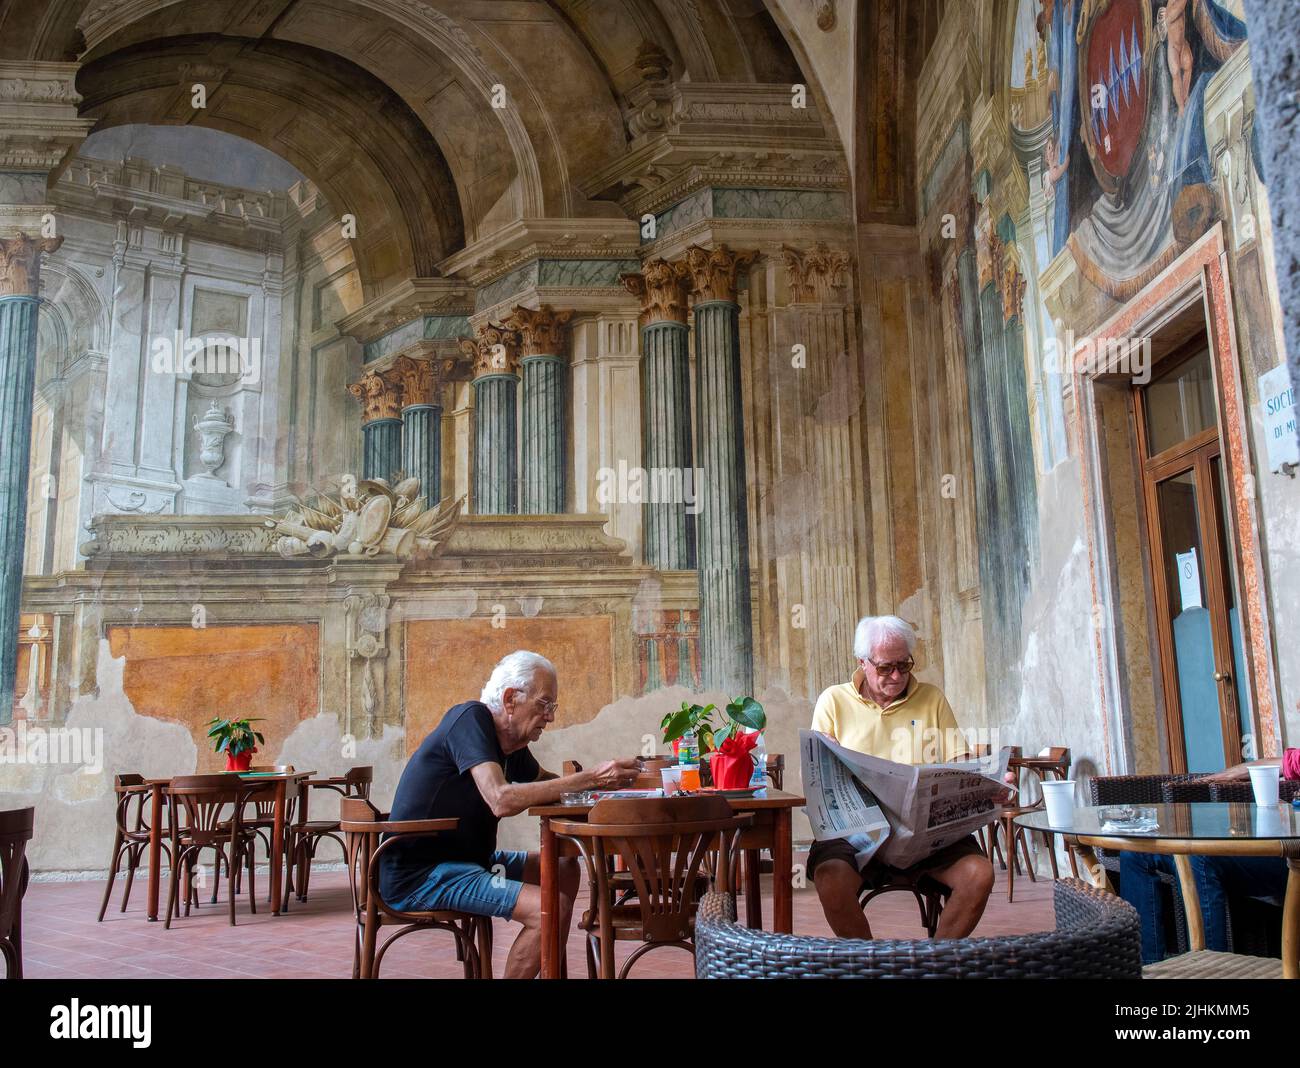 Los caballeros italianos se relajan en Sedile Dominova, un edificio histórico con frescos originales que ahora funciona como un club de hombres en funcionamiento, Sorrento, Italia. Foto de stock